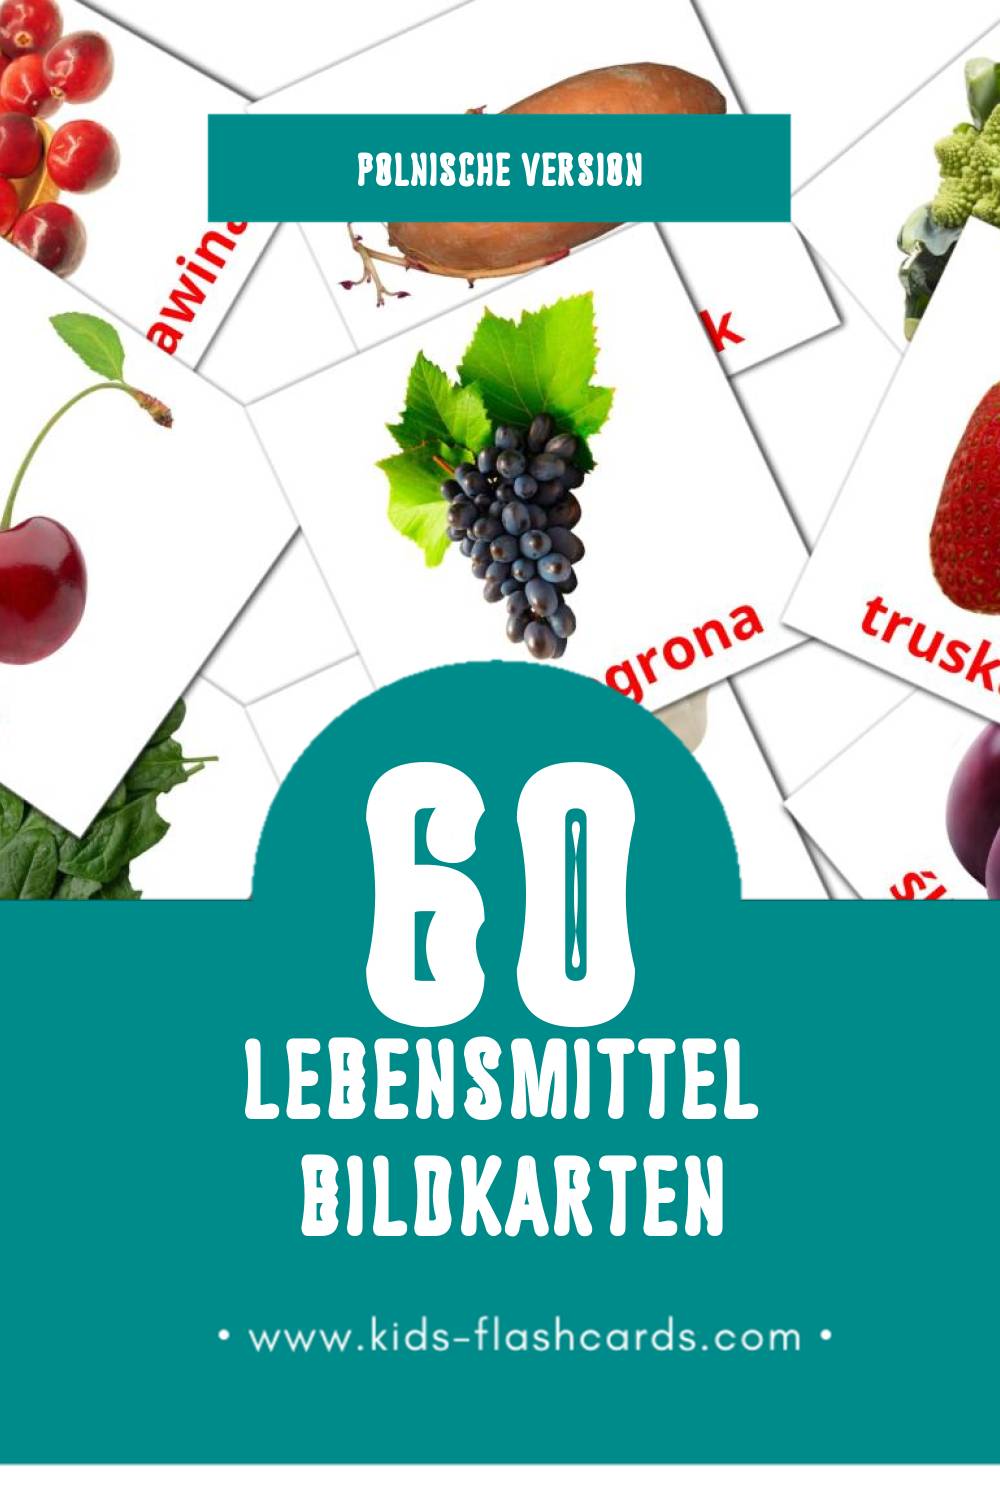 Visual Jedzenie Flashcards für Kleinkinder (60 Karten in Polnisch)